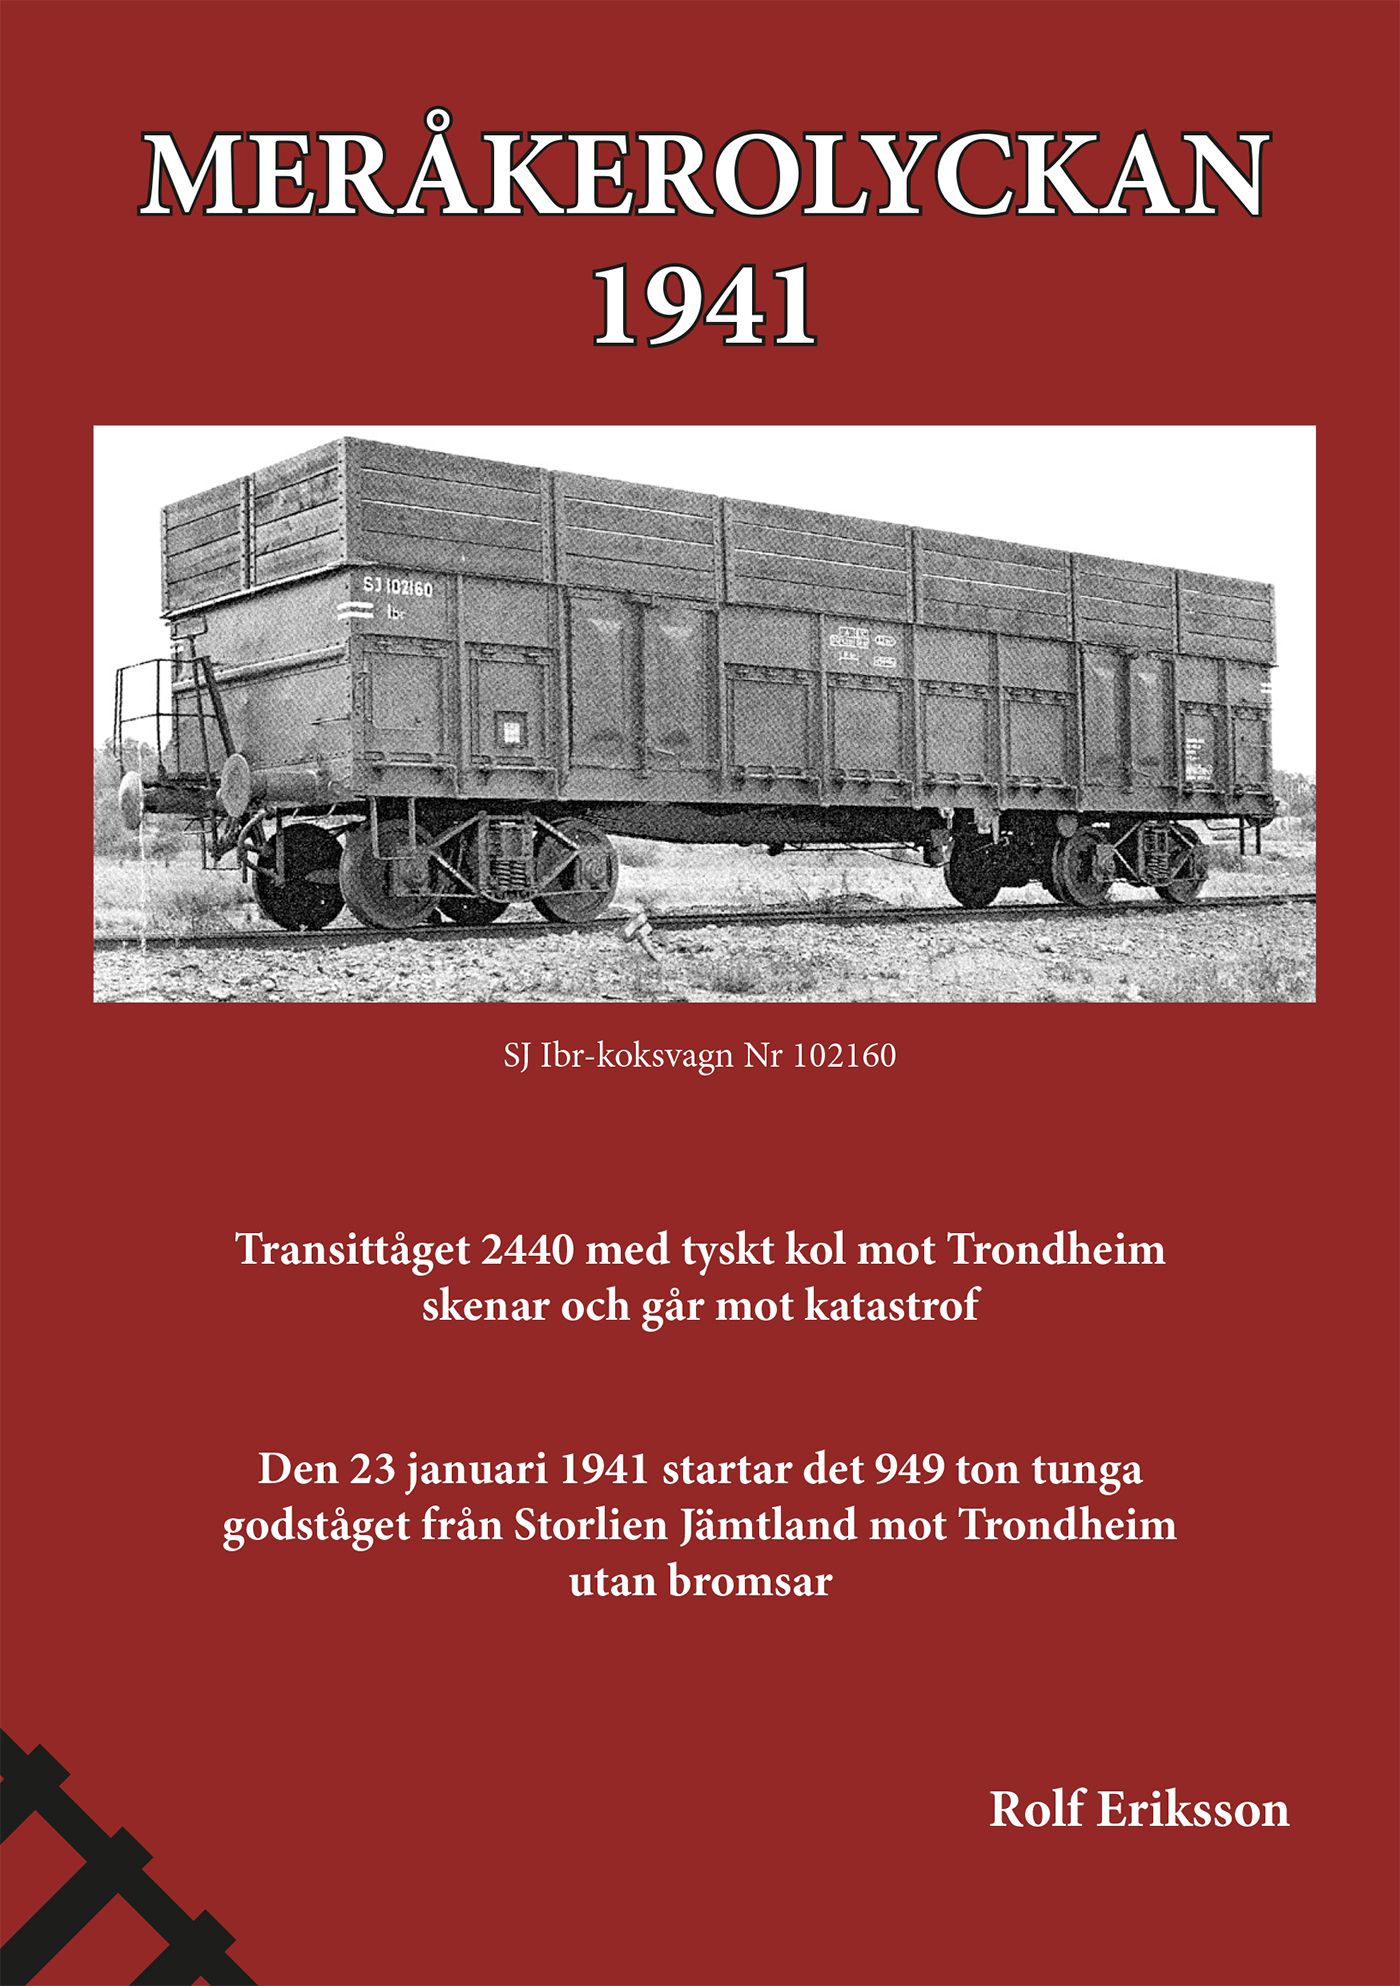 Meråkerolyckan - 1941, e-bok av Rolf Eriksson